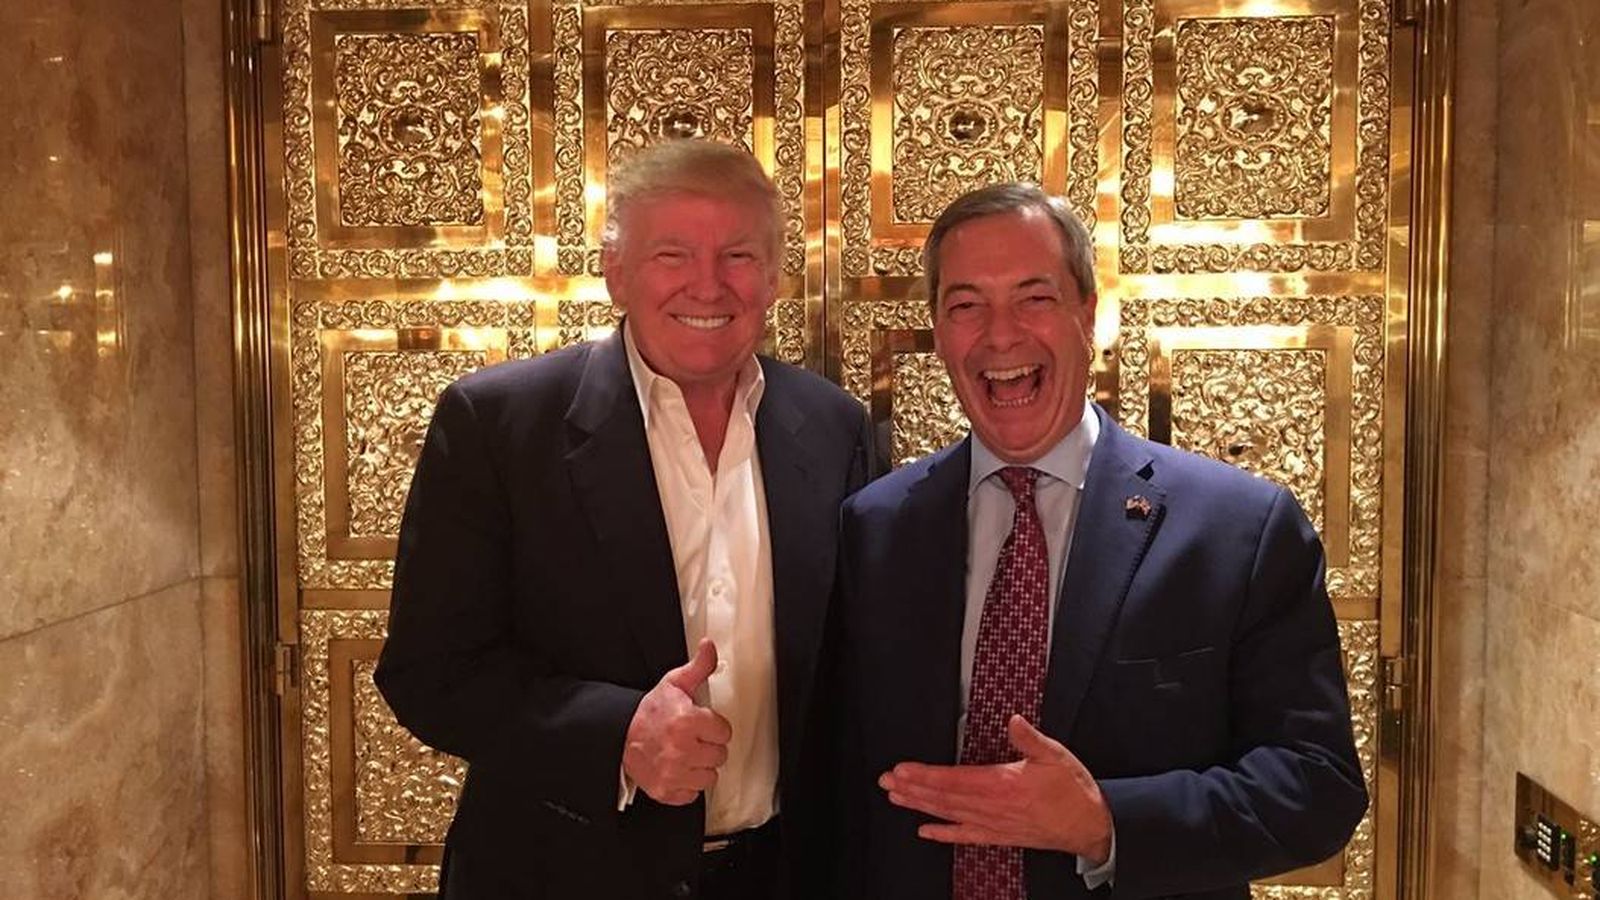 Foto: Donald Trump y Nigel Farage, durante su encuentro en la Trump Tower. (@Nigel_Farage)